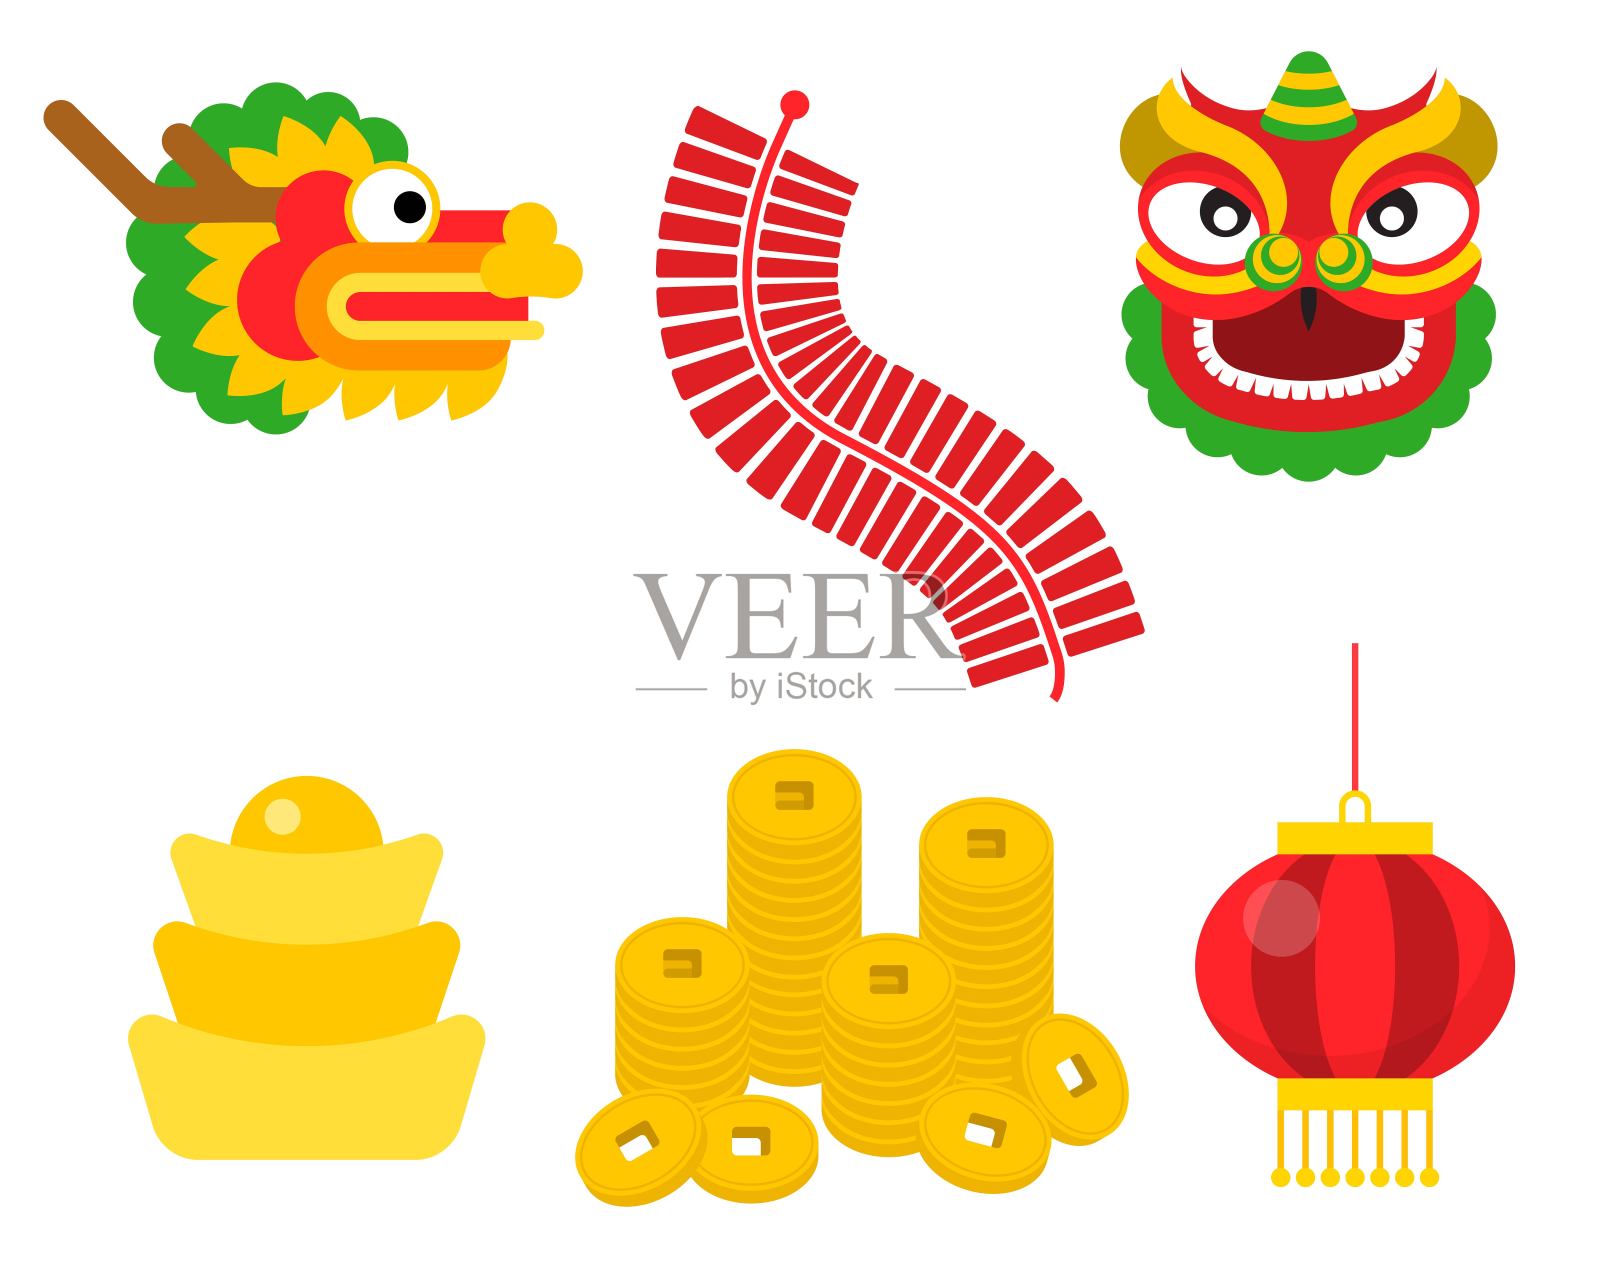 中国新年插图材料如舞狮头、龙、金条插画图片素材